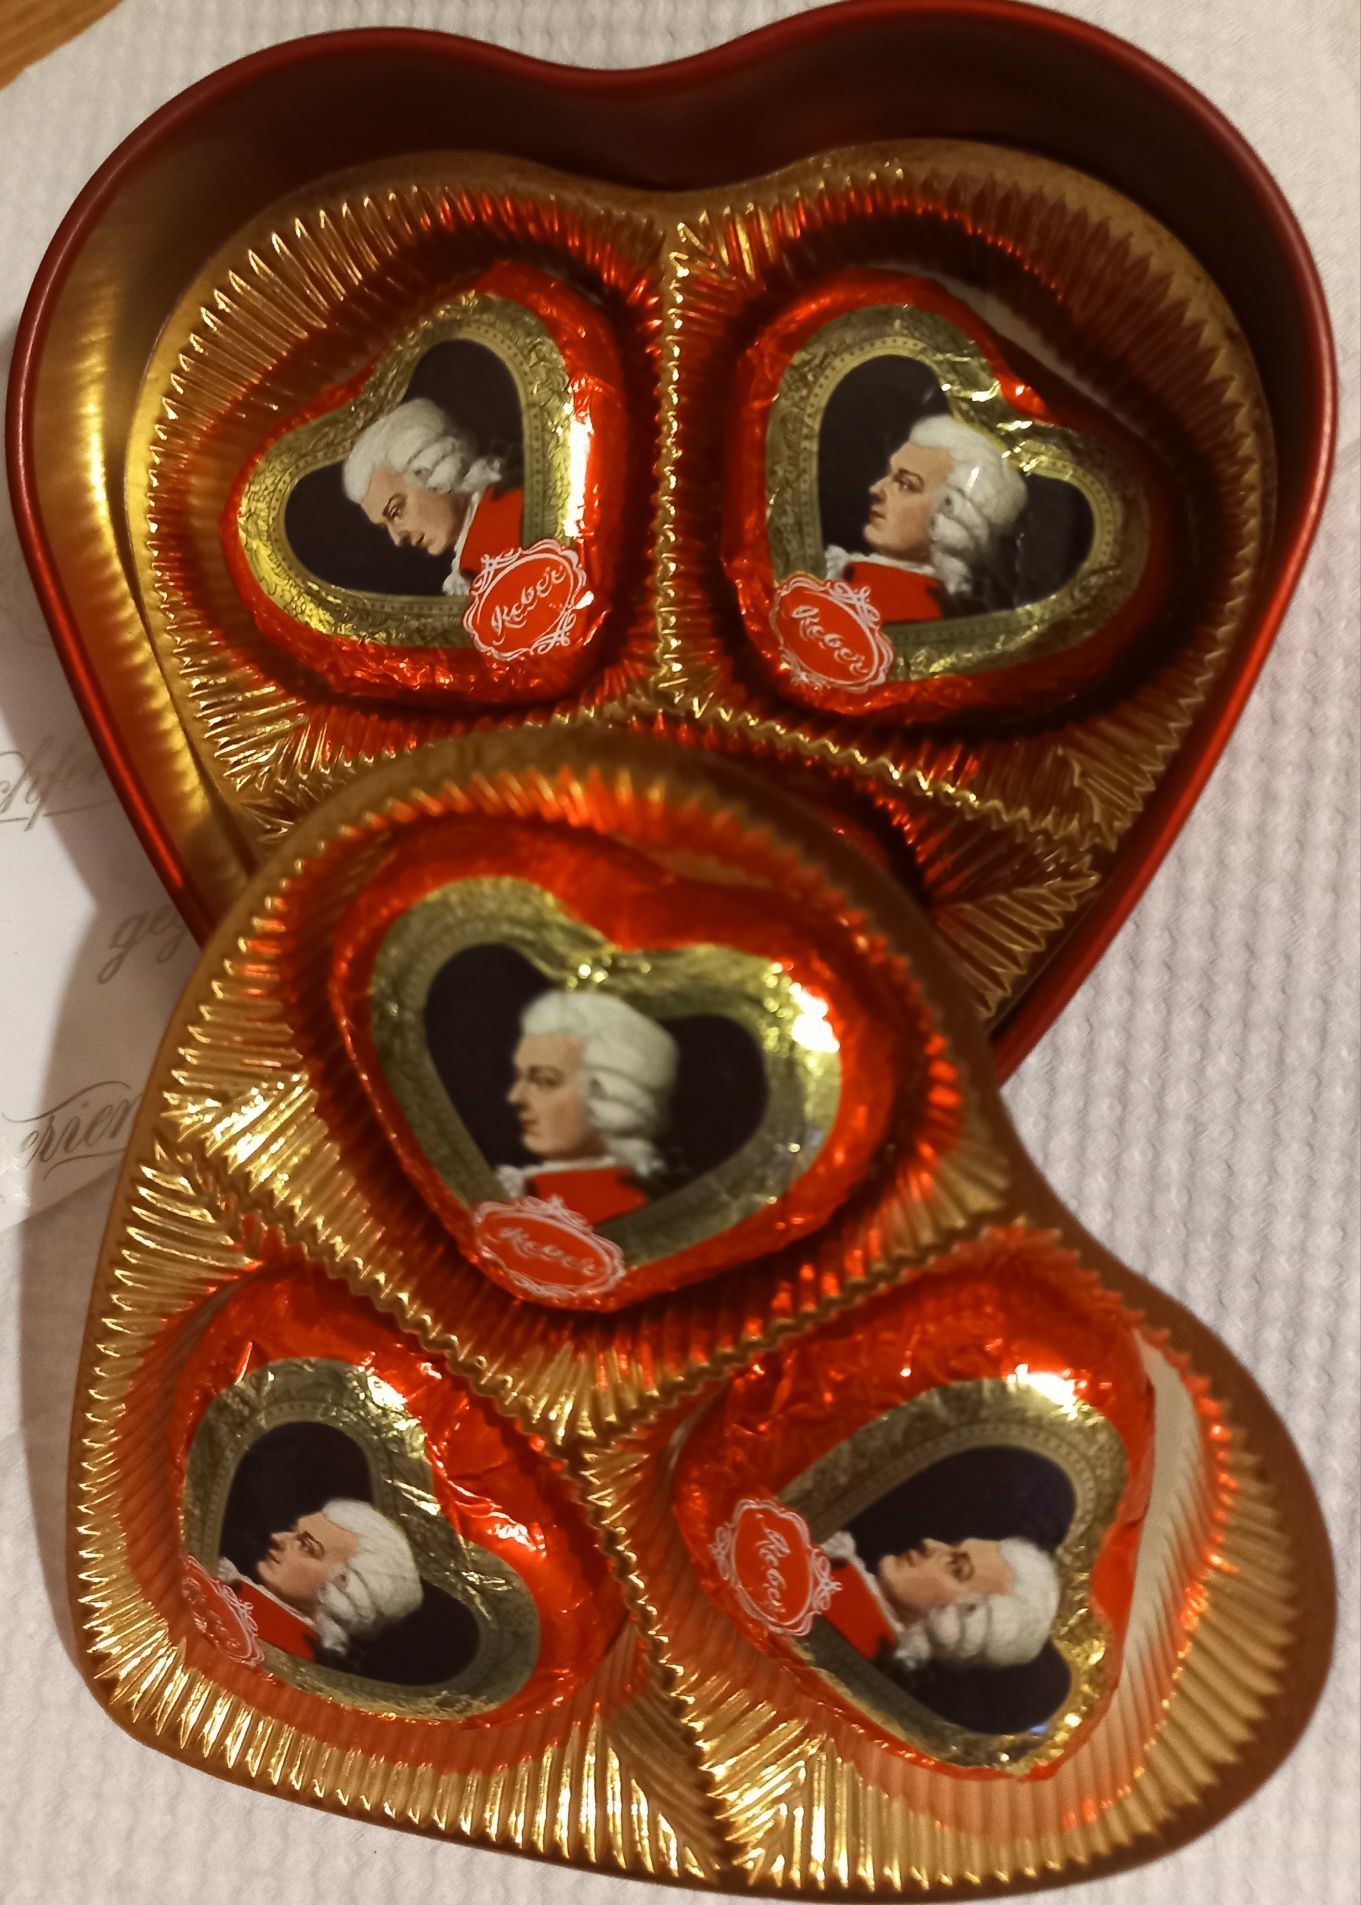 Цукерки Mozart Herzl праліне з темного шоколаду